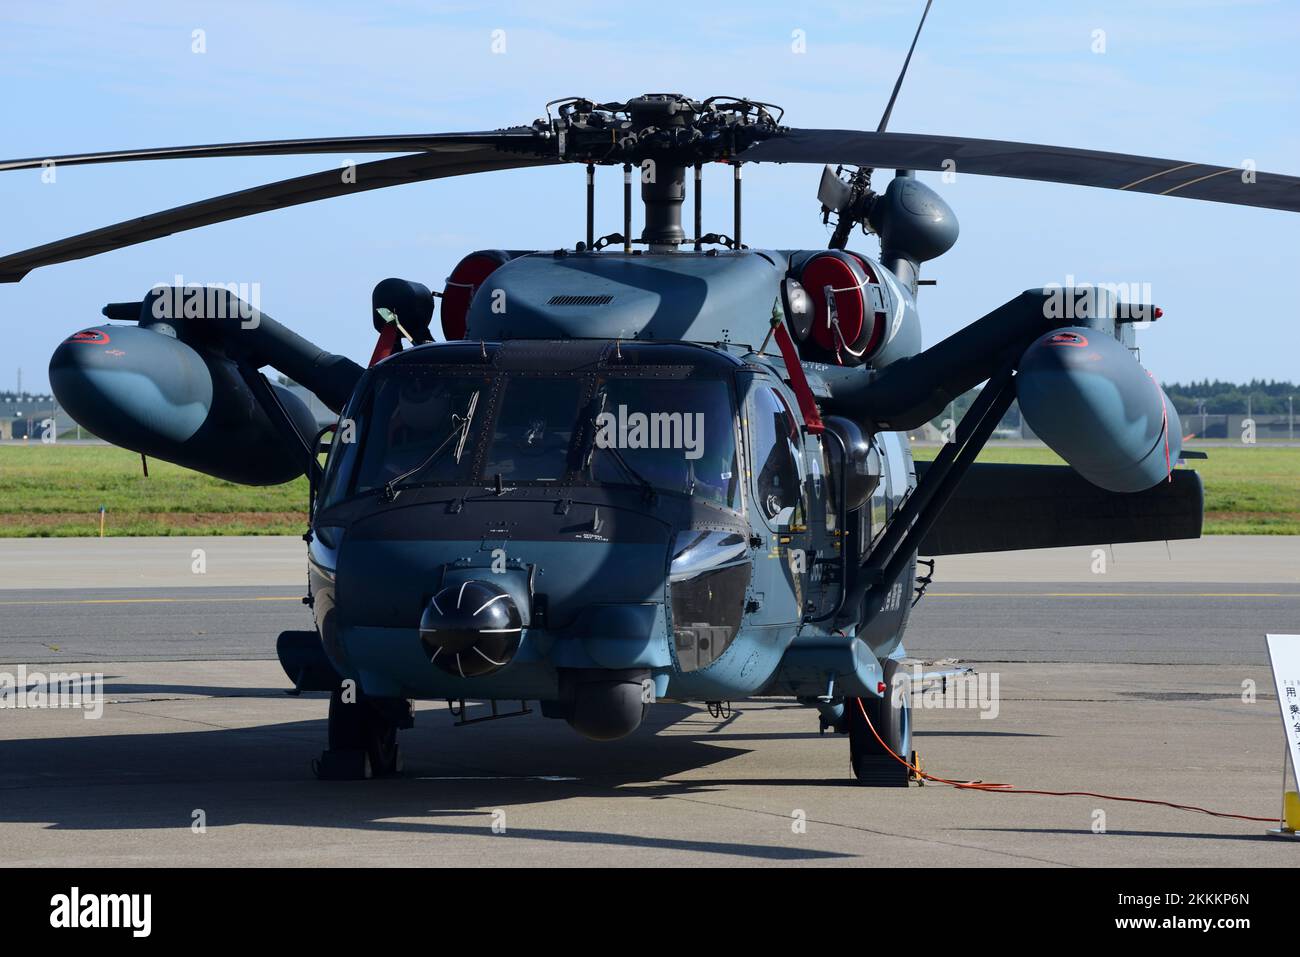 Préfecture d'Aomori, Japon - 07 septembre 2014 : hélicoptère de recherche et de sauvetage Sikorsky UH-60J de la Force aérienne japonaise d'autodéfense. Banque D'Images